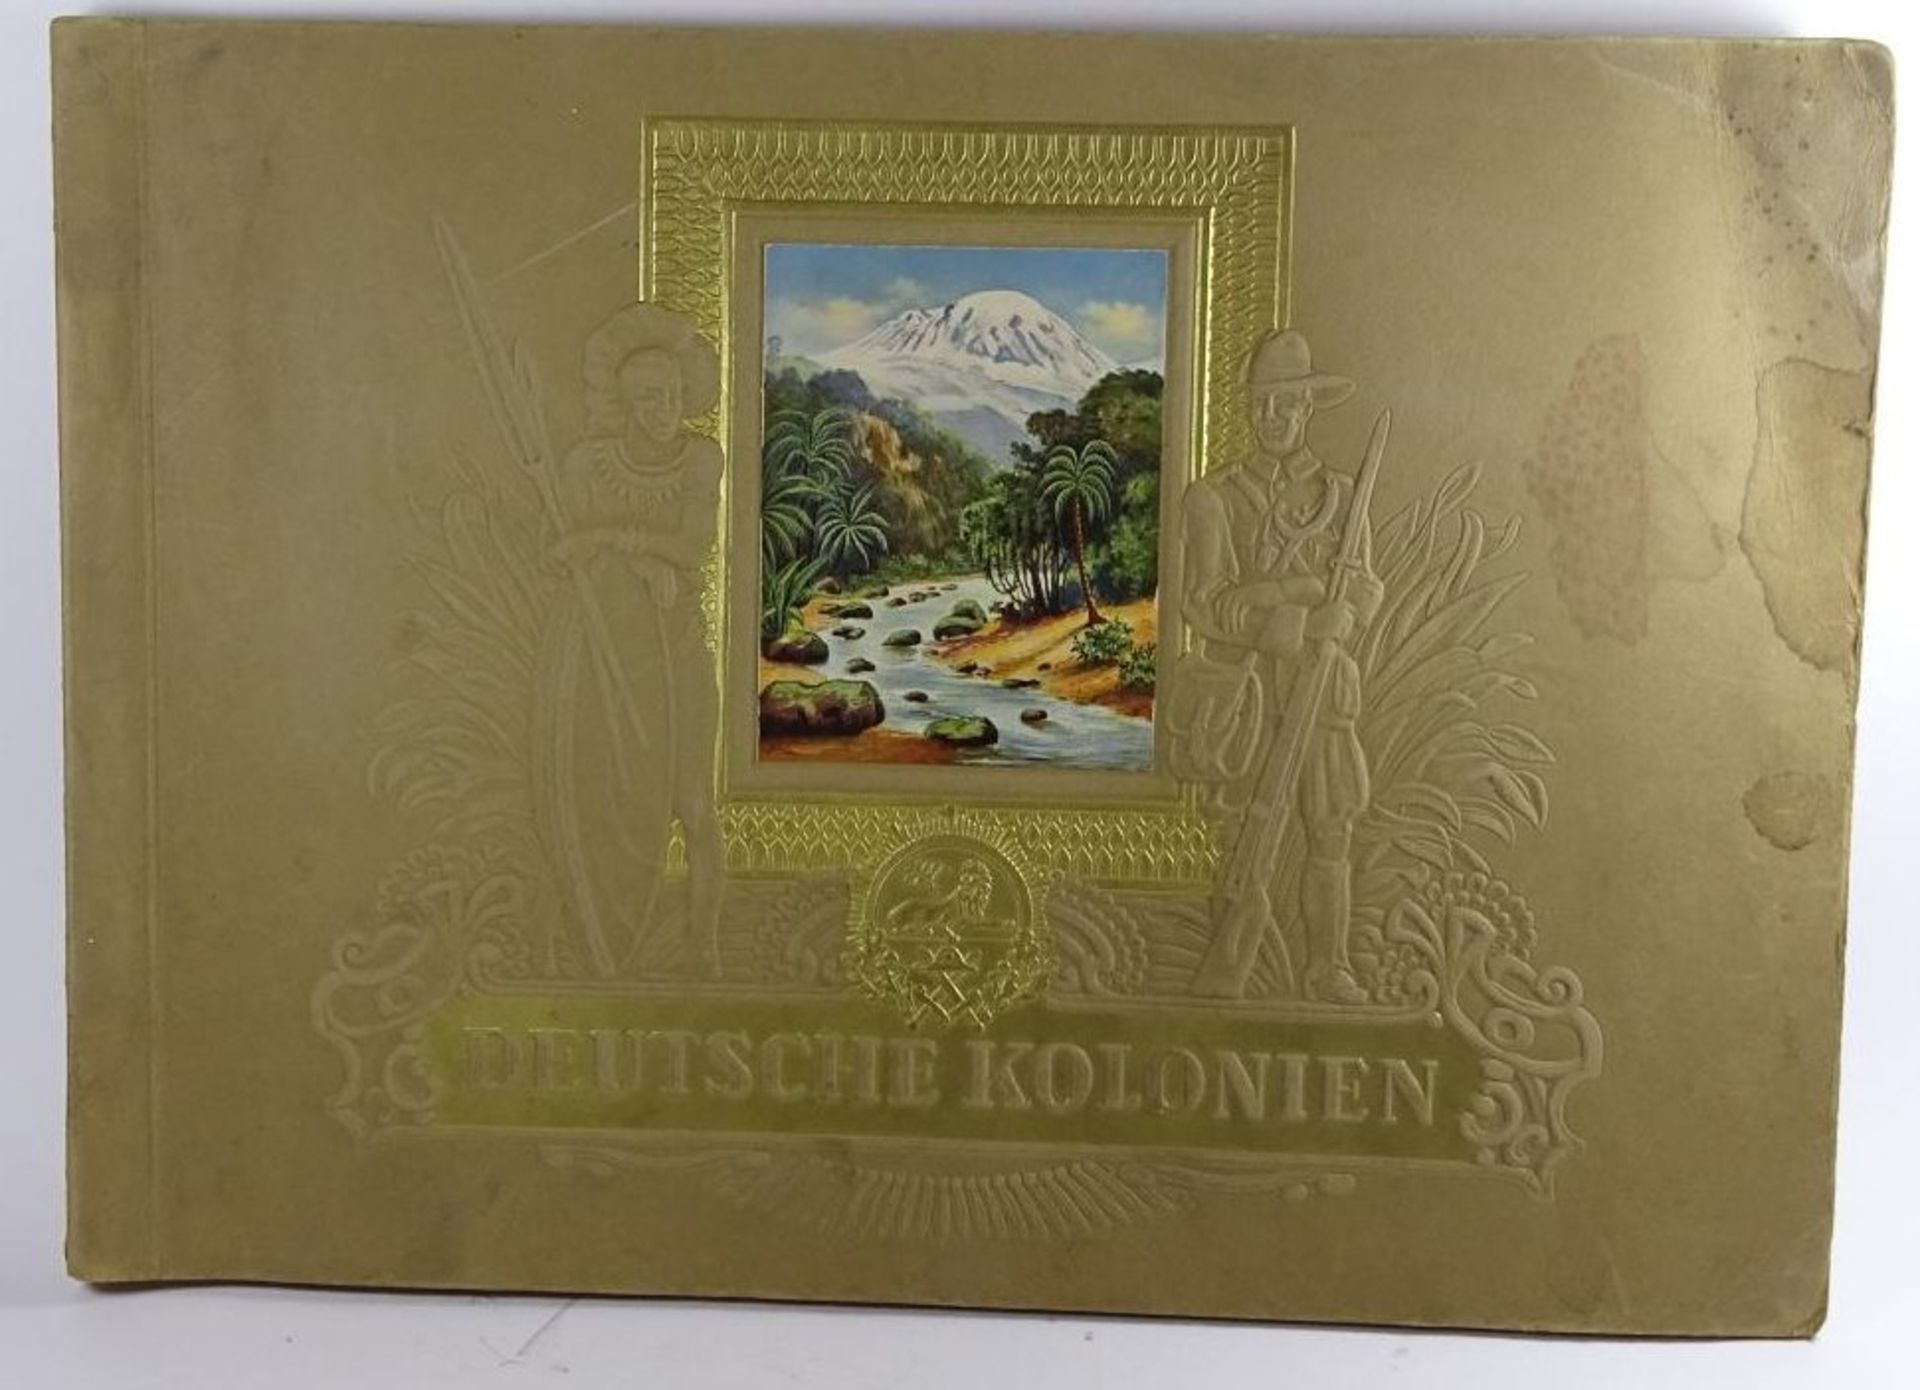 Sammelalbum "Deutsche Kolonien"